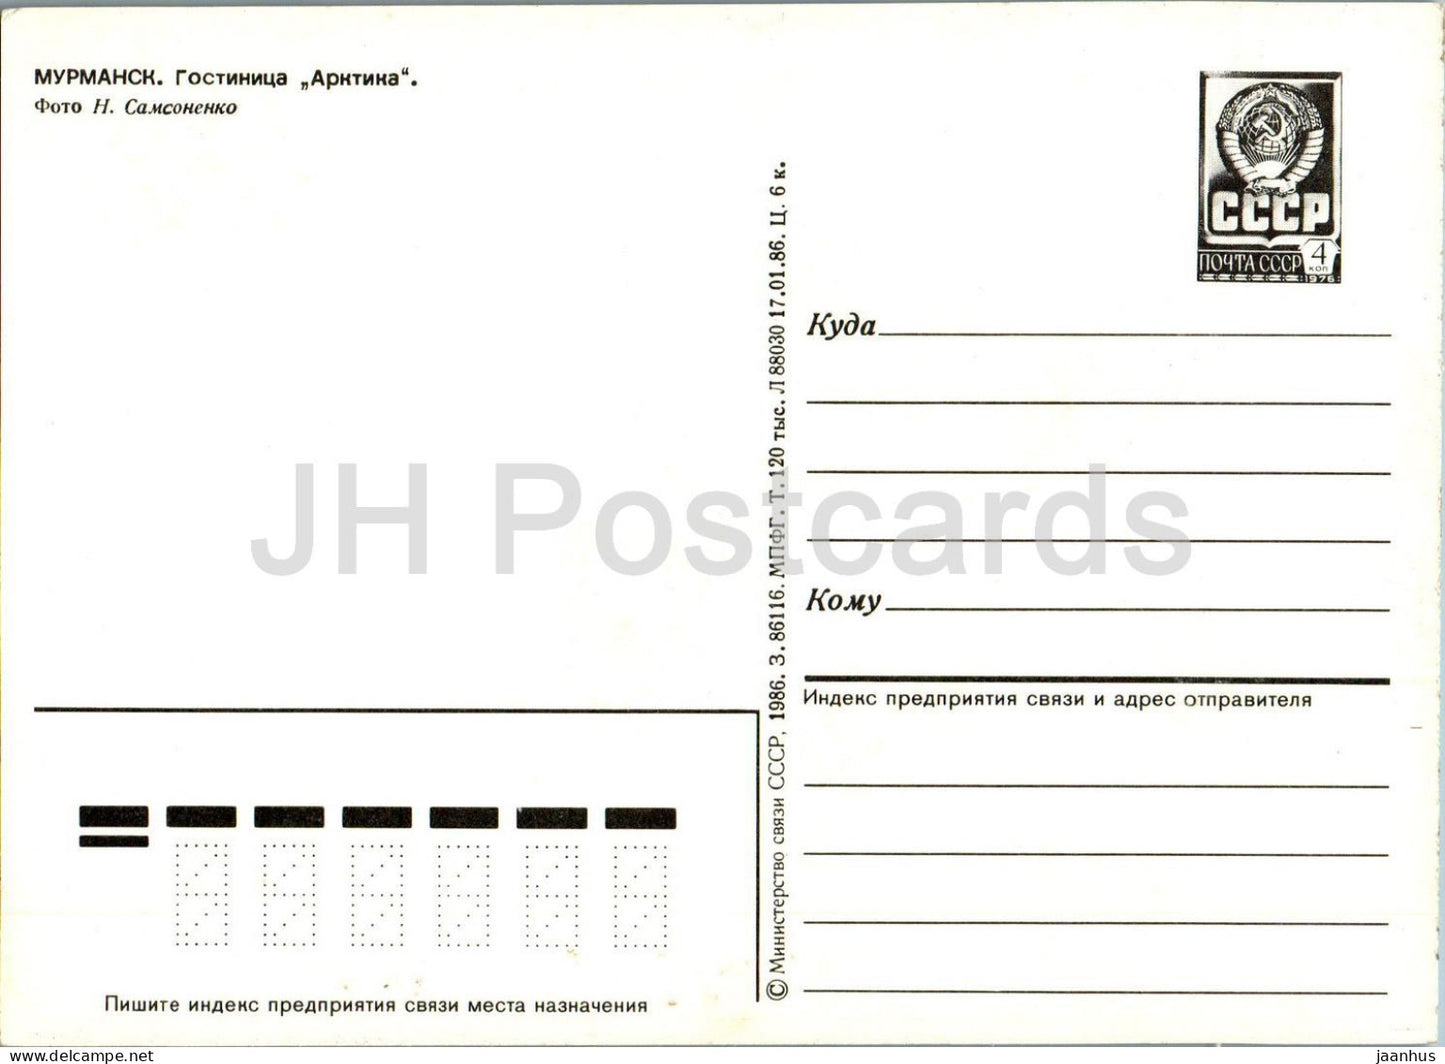 Murmansk - hotel Arktika (Arctic) - postal stationery - 1986 - Russia USSR - unused